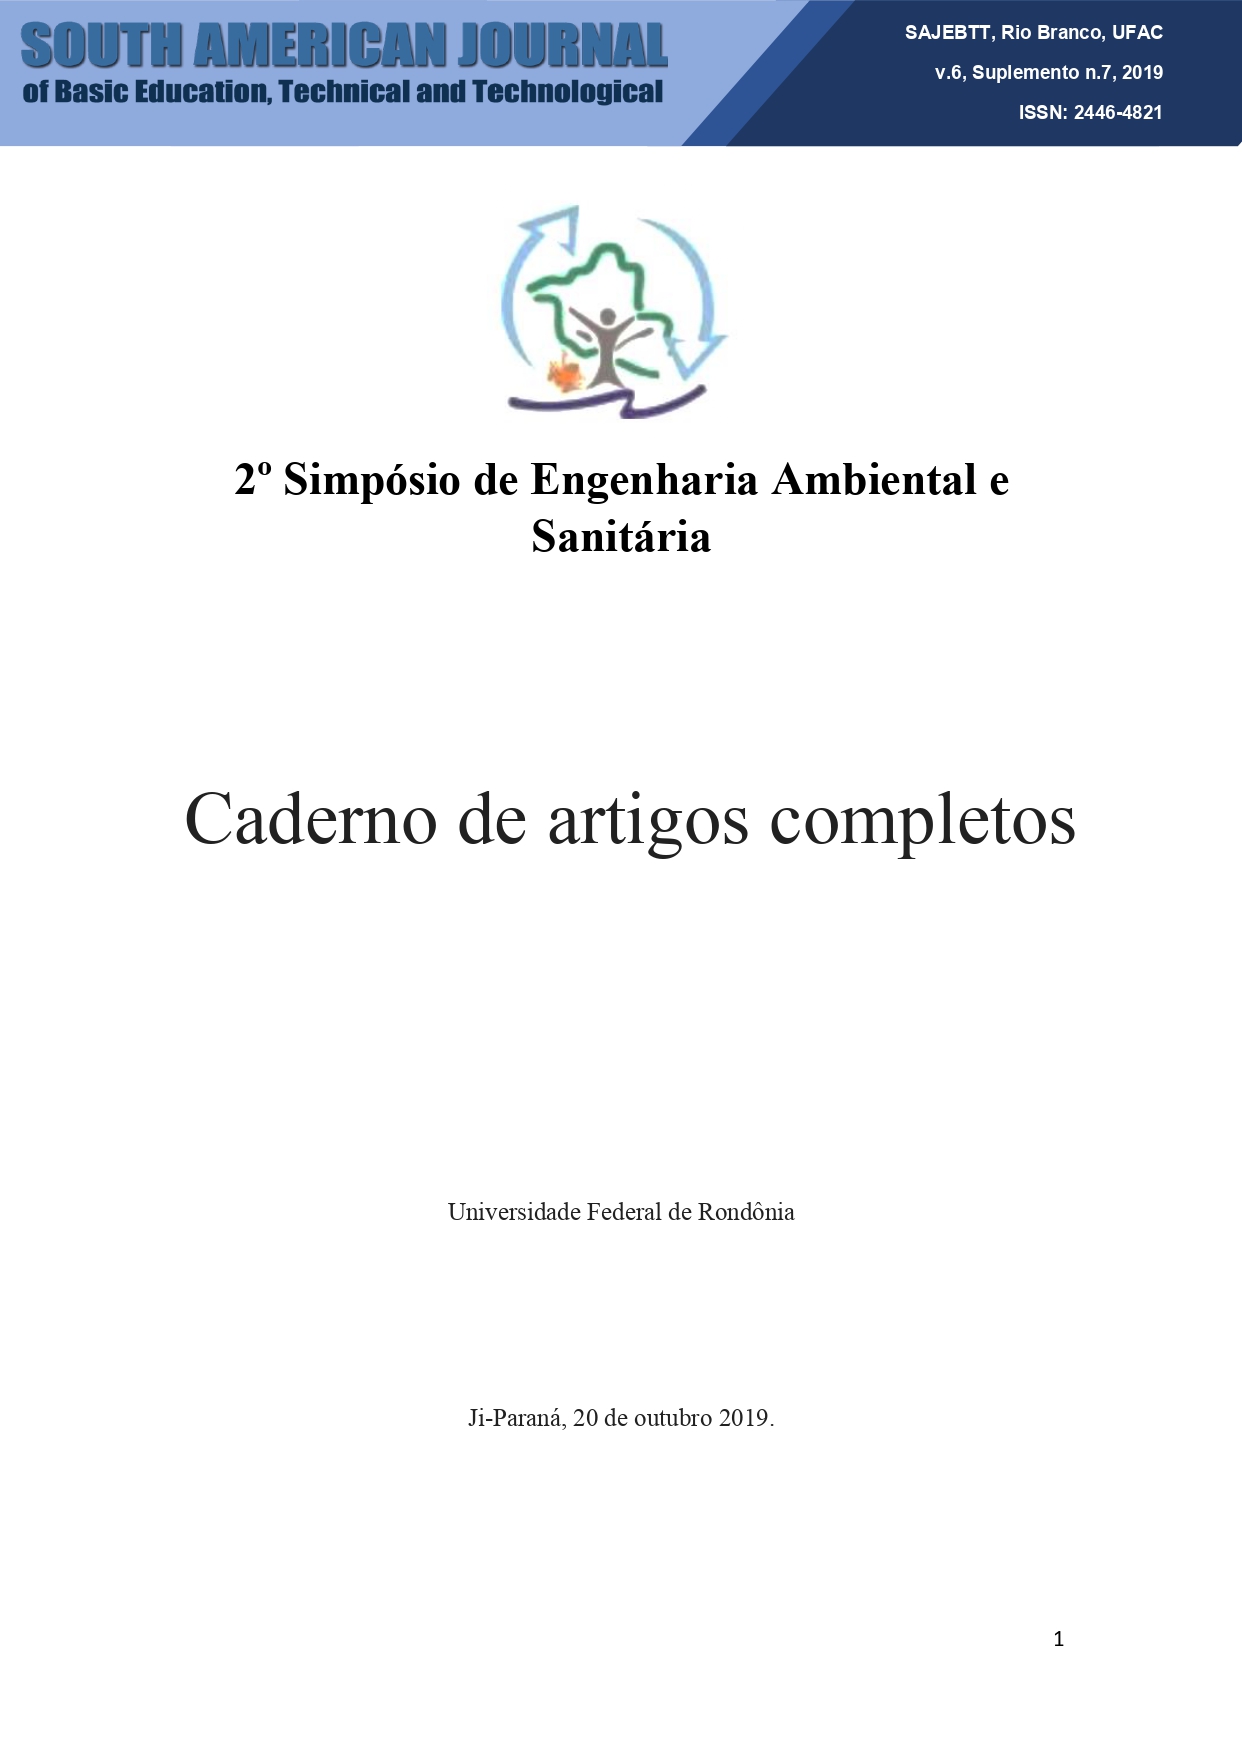 					Ver Vol. 6 Núm. Sup 7 (2019): Anais do 2º Simpósio de Engenharia Ambiental e Sanitária/UNIR/ Ji-Paraná
				